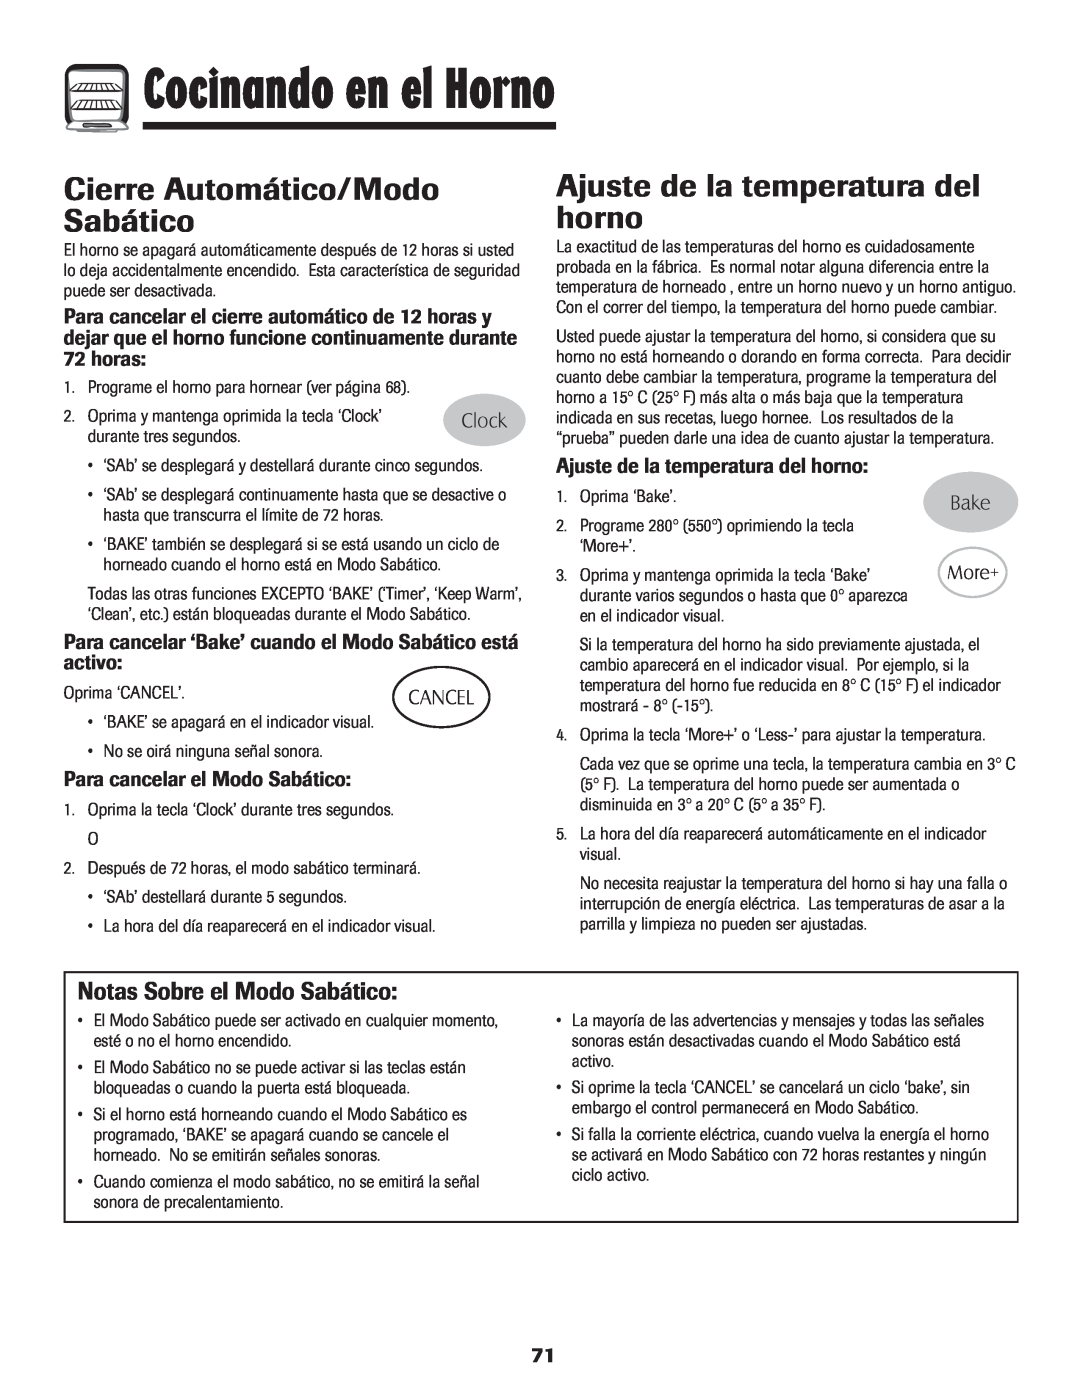 Maytag 8113P424-60 manual Cierre Automático/Modo Sabático, Ajuste de la temperatura del horno, Notas Sobre el Modo Sabático 